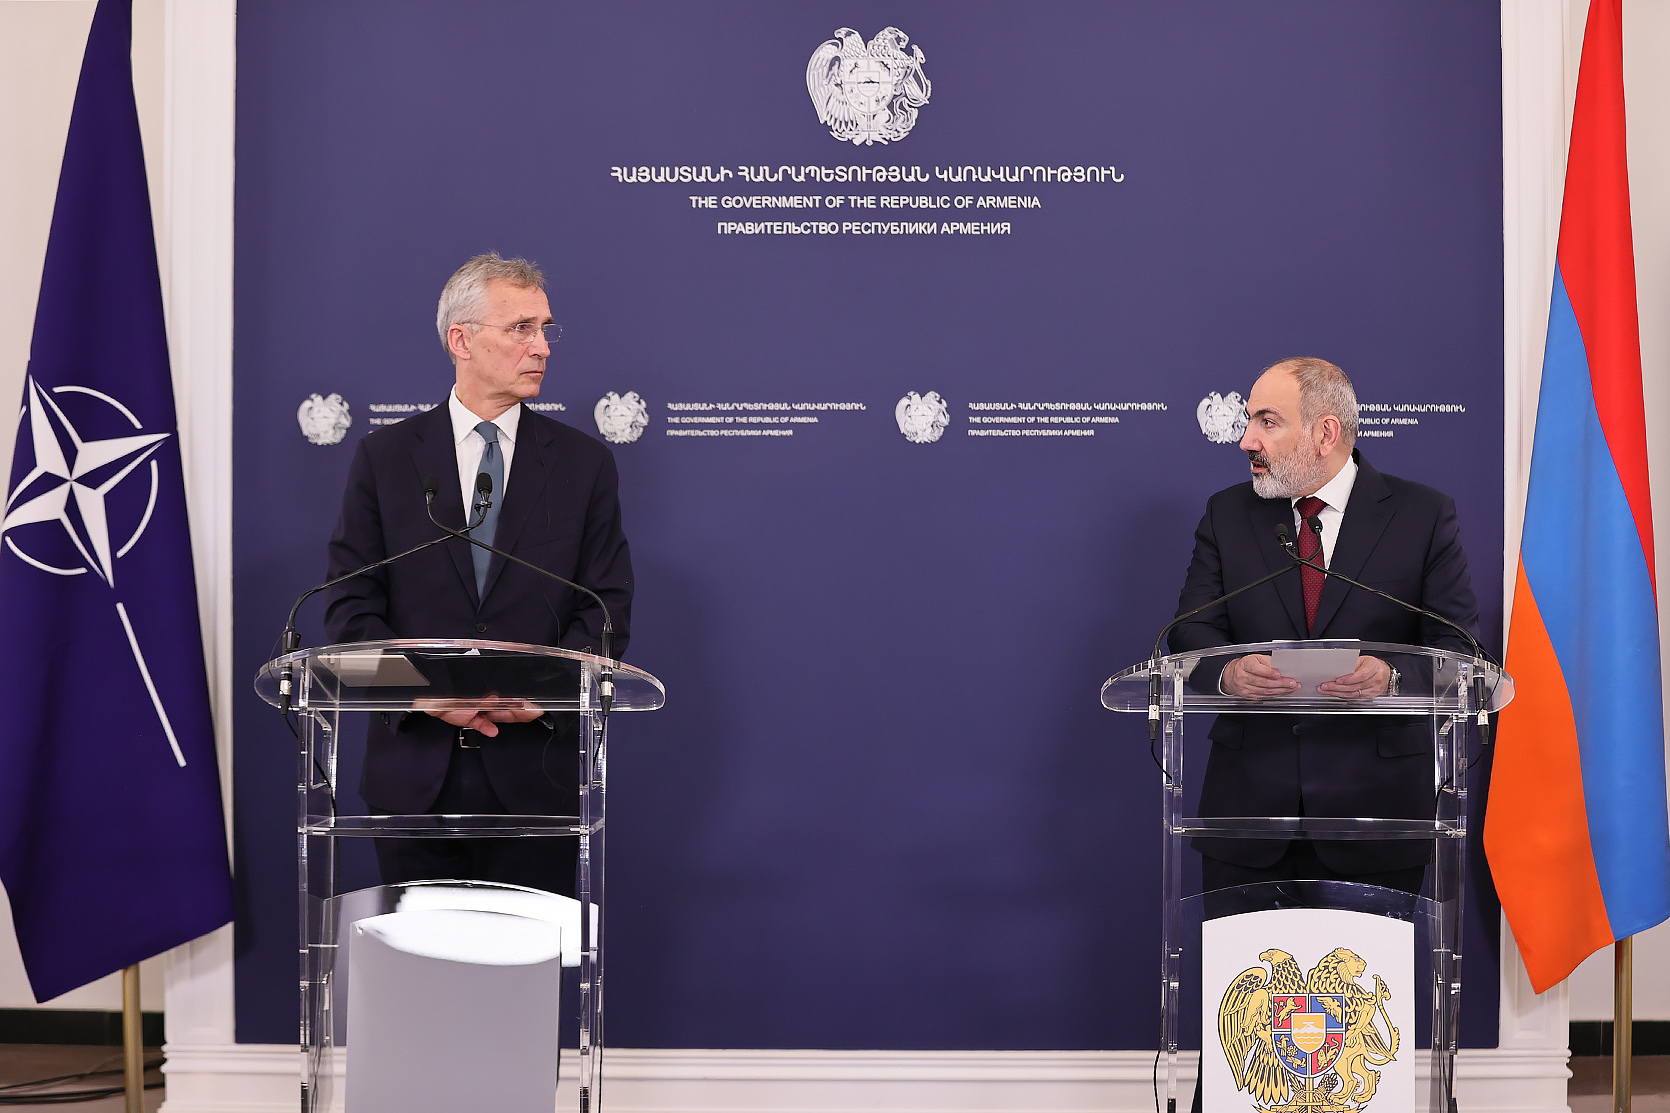 НАТО поддерживает суверенитет, территориальную целостность и мирные устремления Армении: Столтенберг